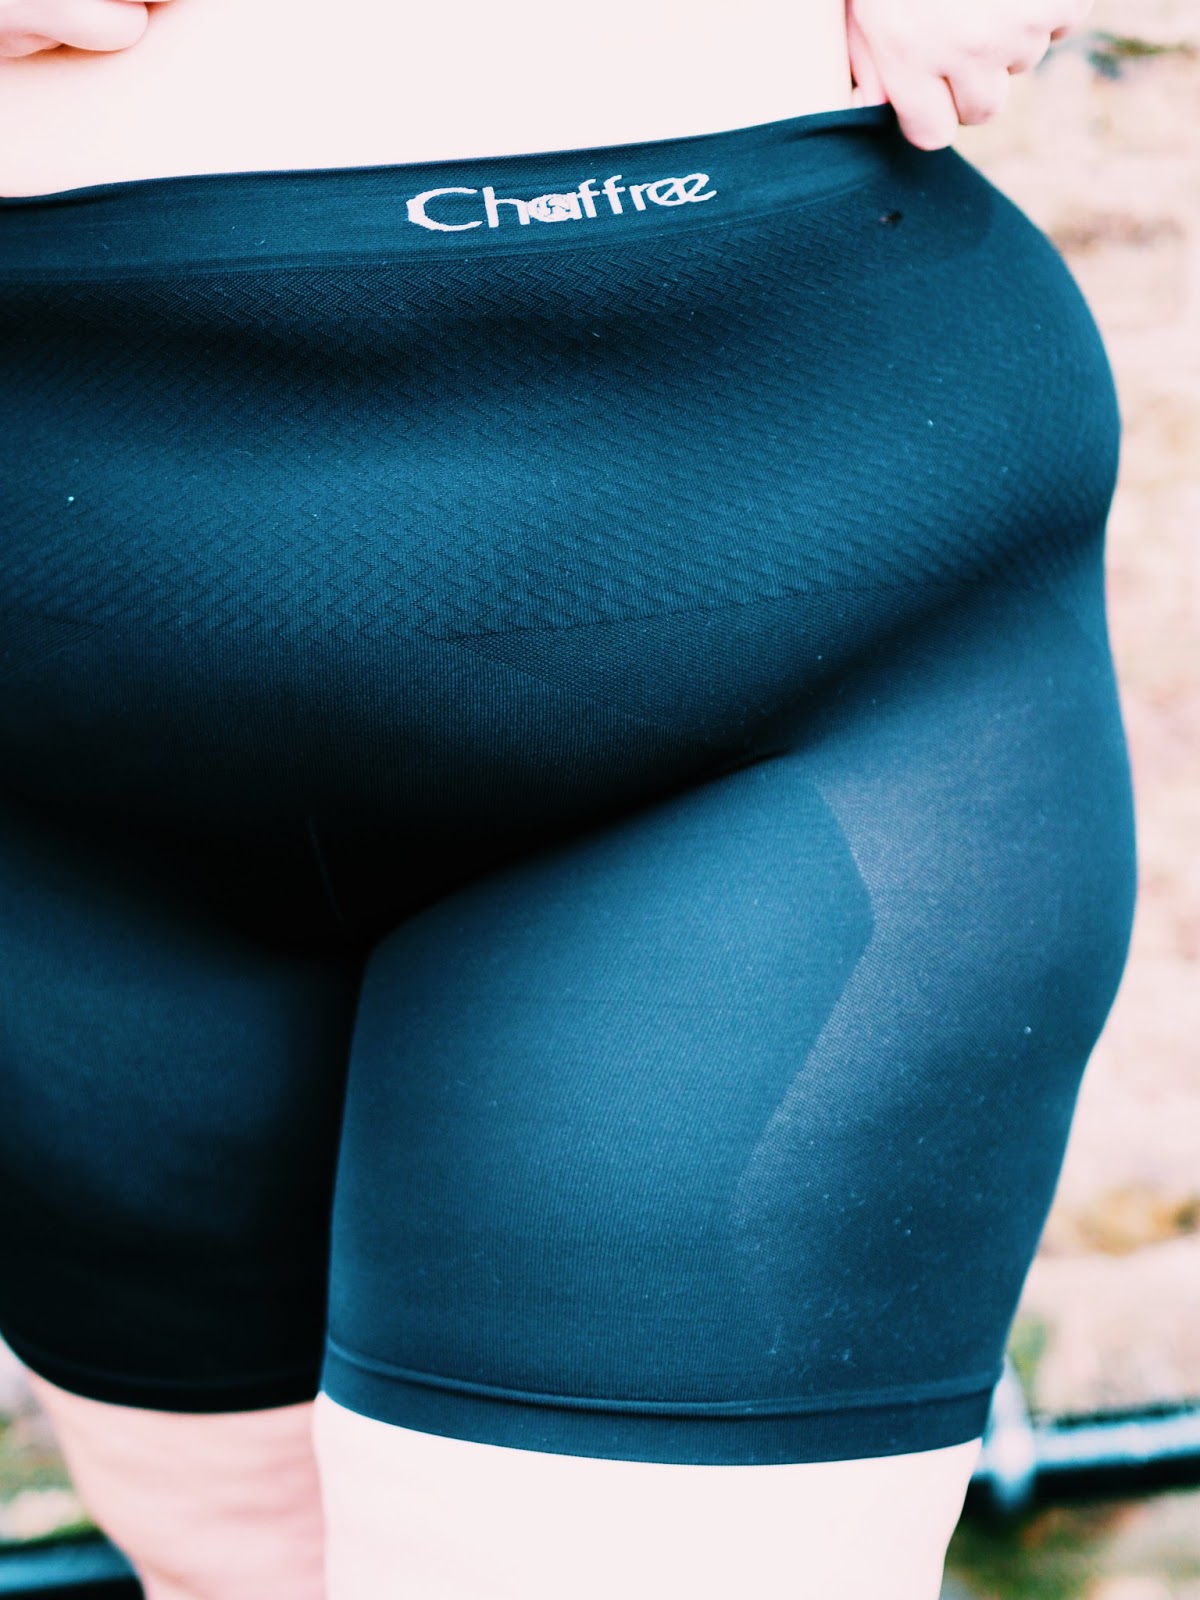 Chaffree Underwear Chub Rub Review Cardifforniagurl